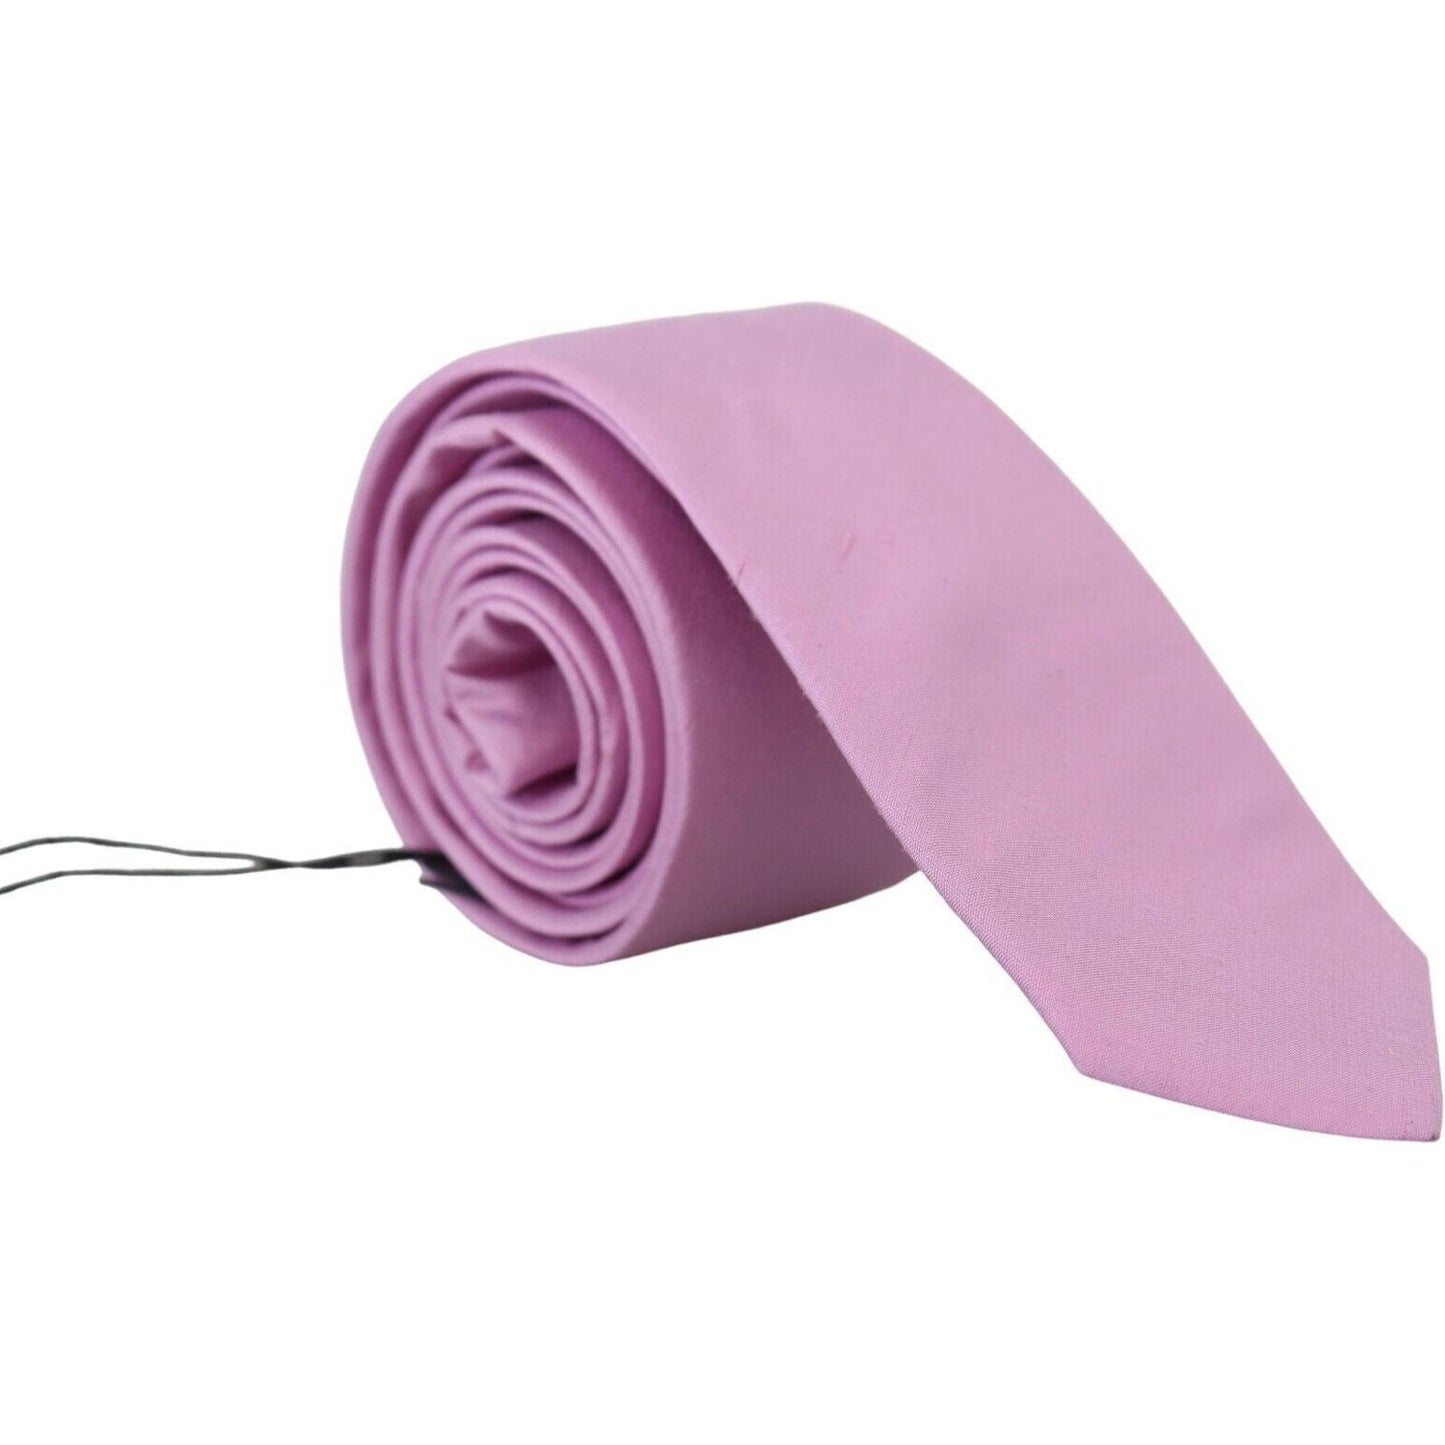 Elegant Silk Men's Tie in Pink Daniele Alessandrini